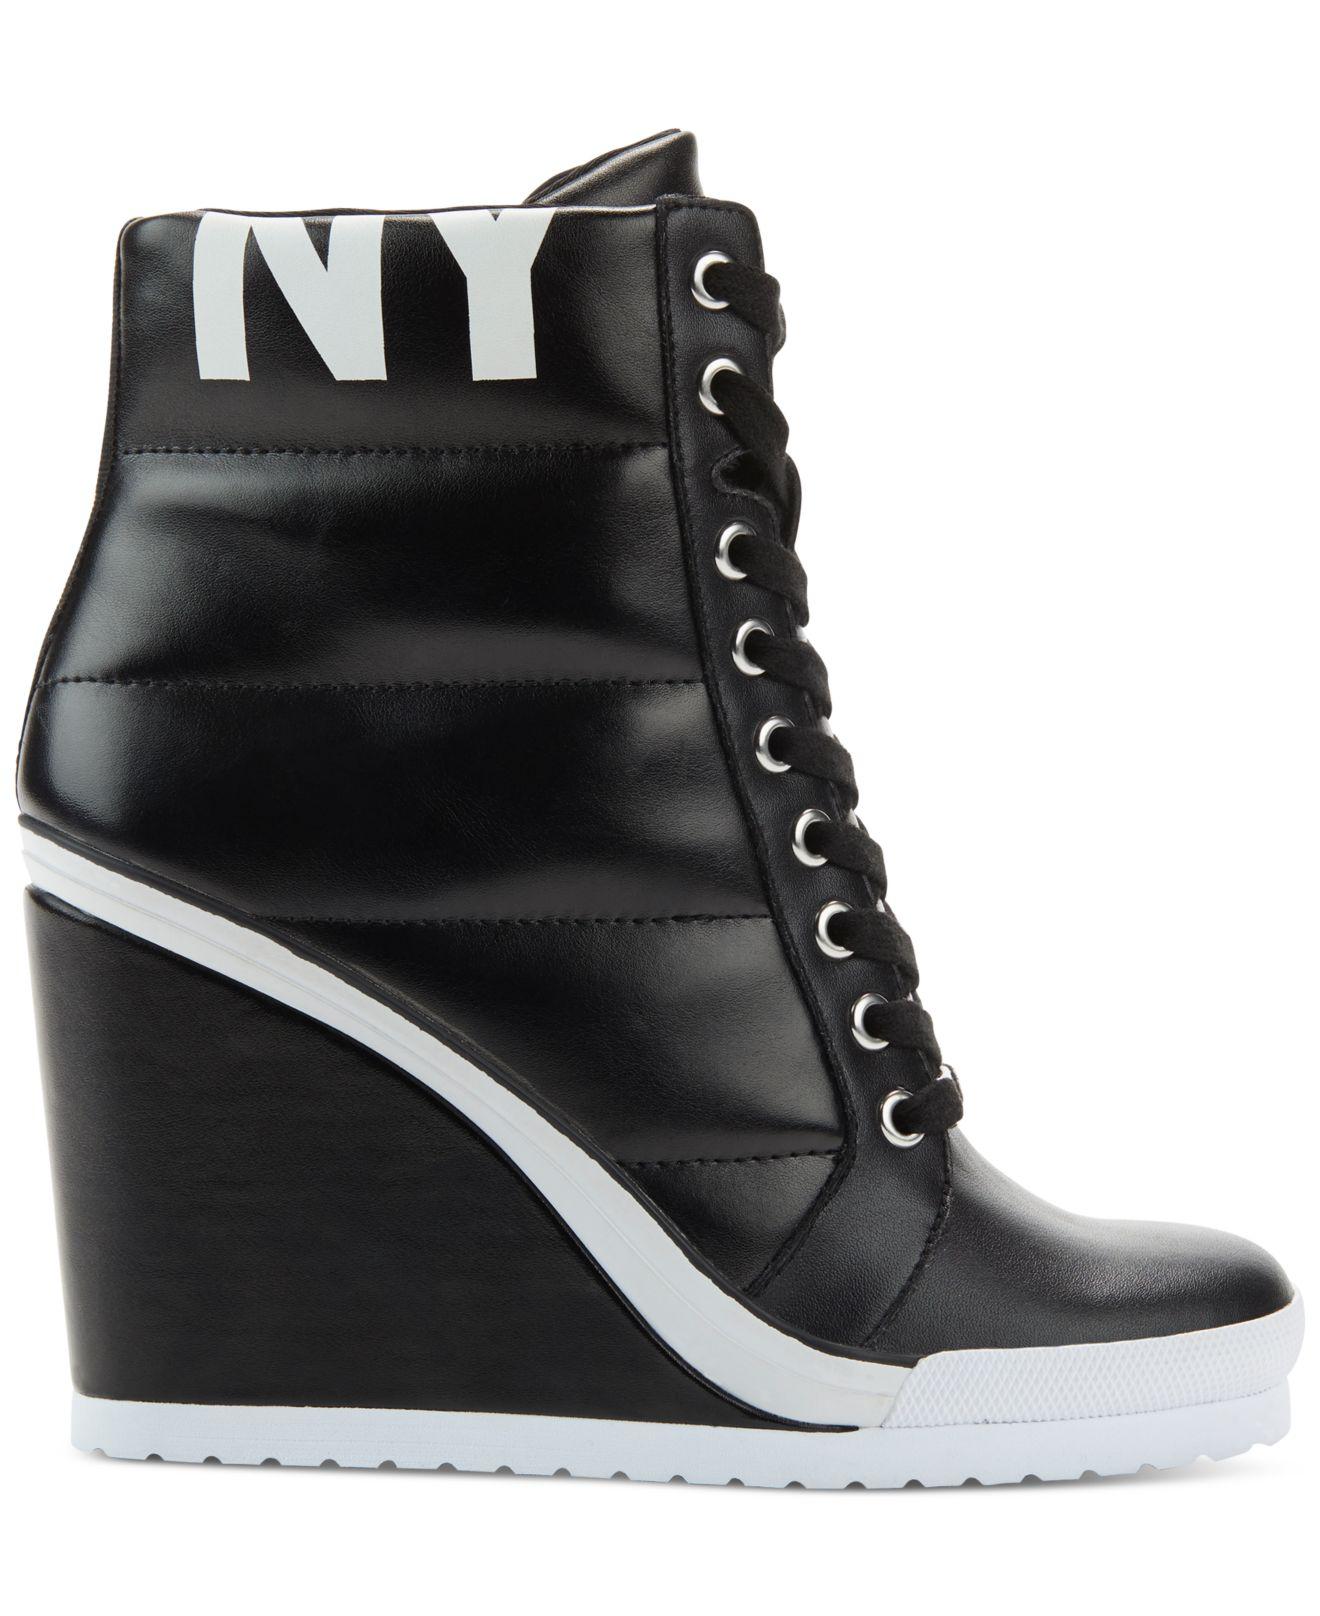 DKNY Noho Wedge Sneakers in Black - Lyst